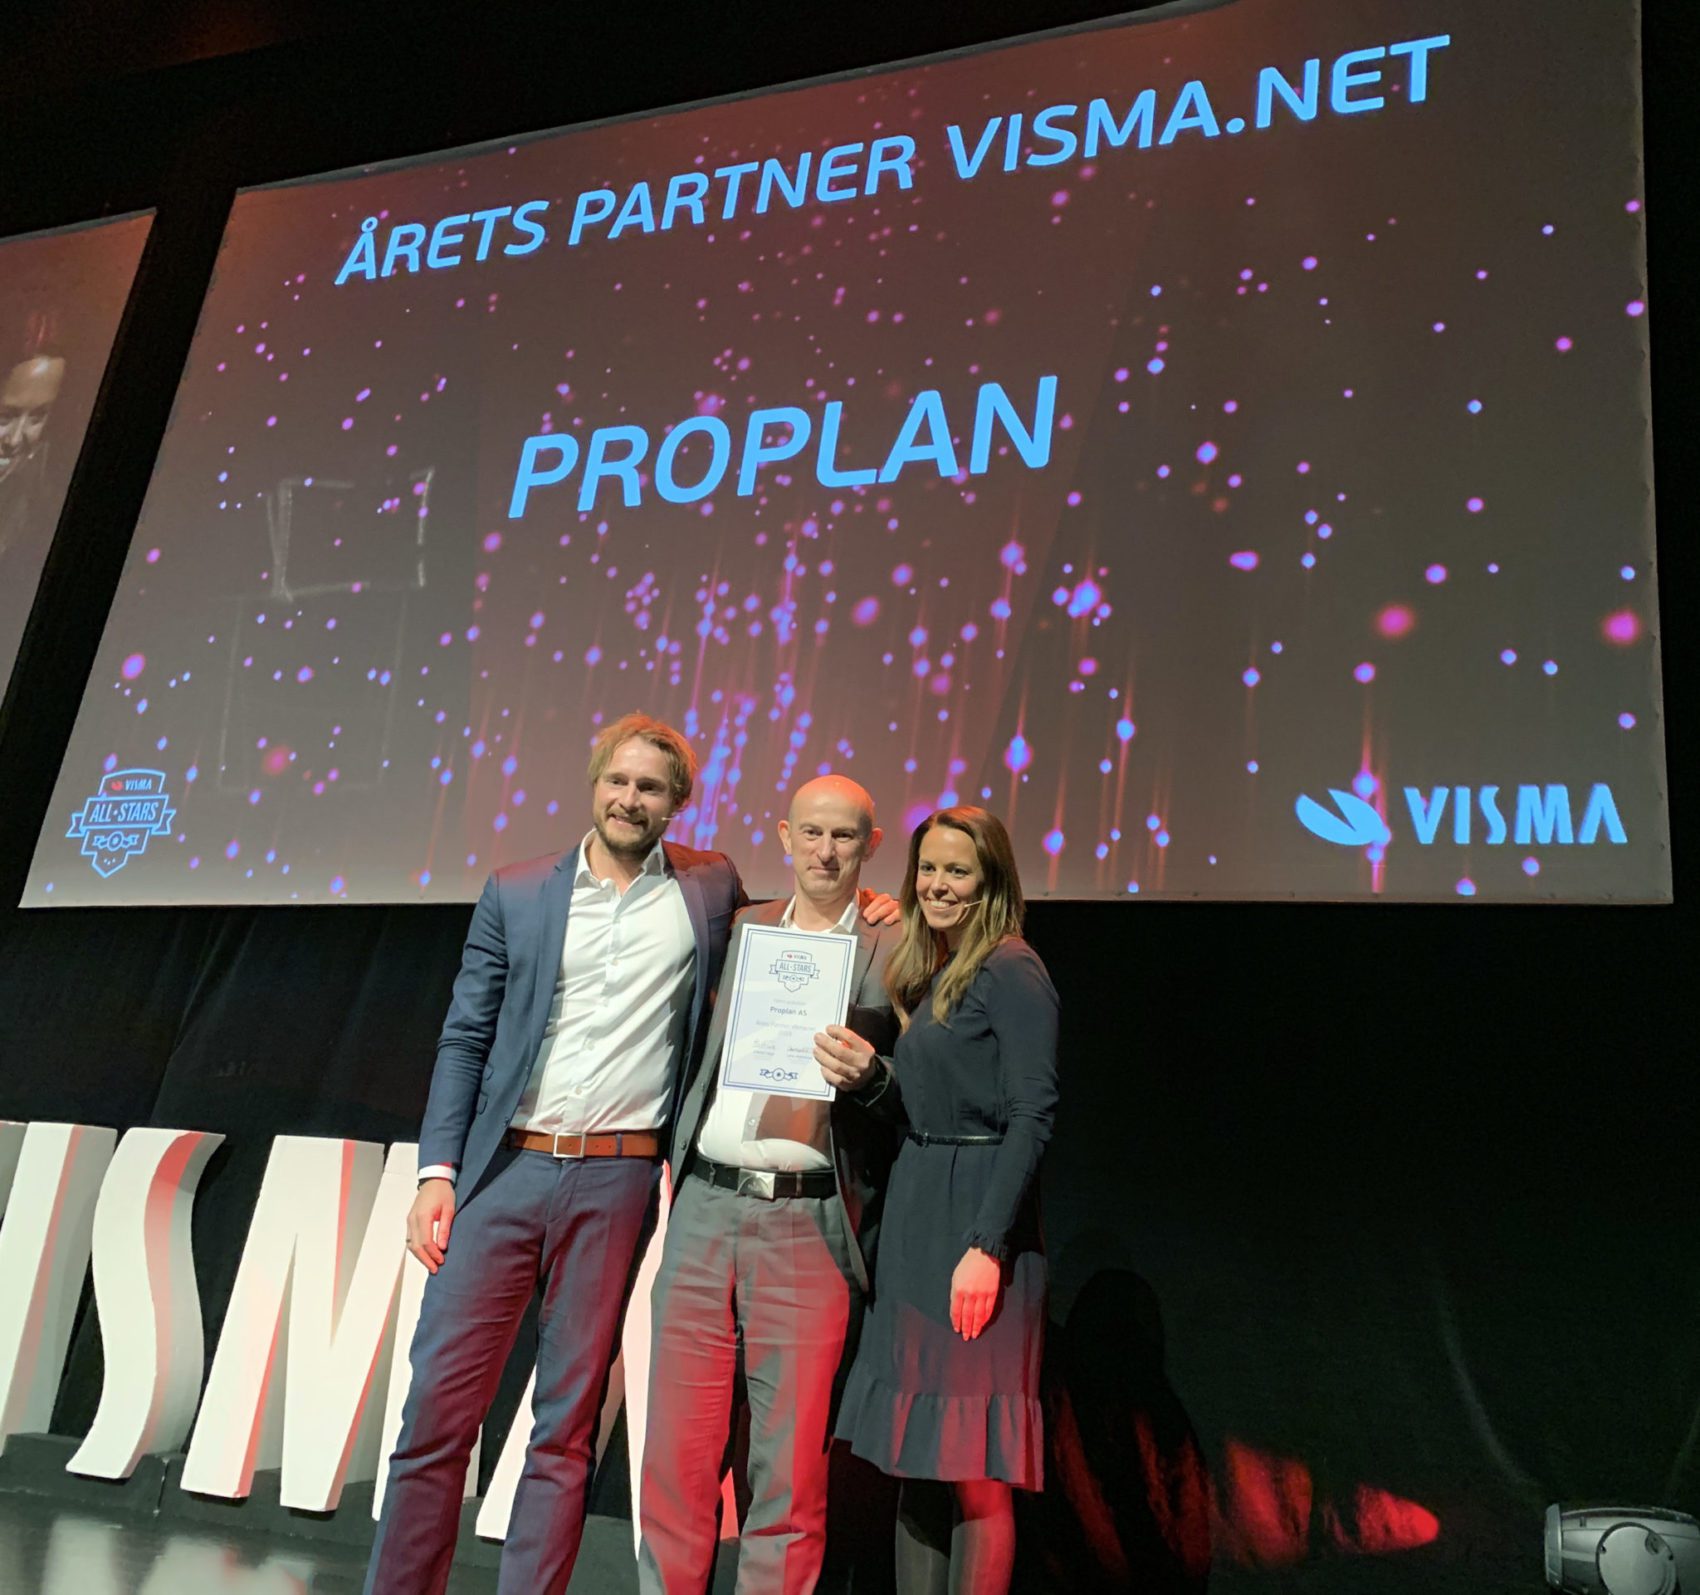 Årets Partner Visma.net